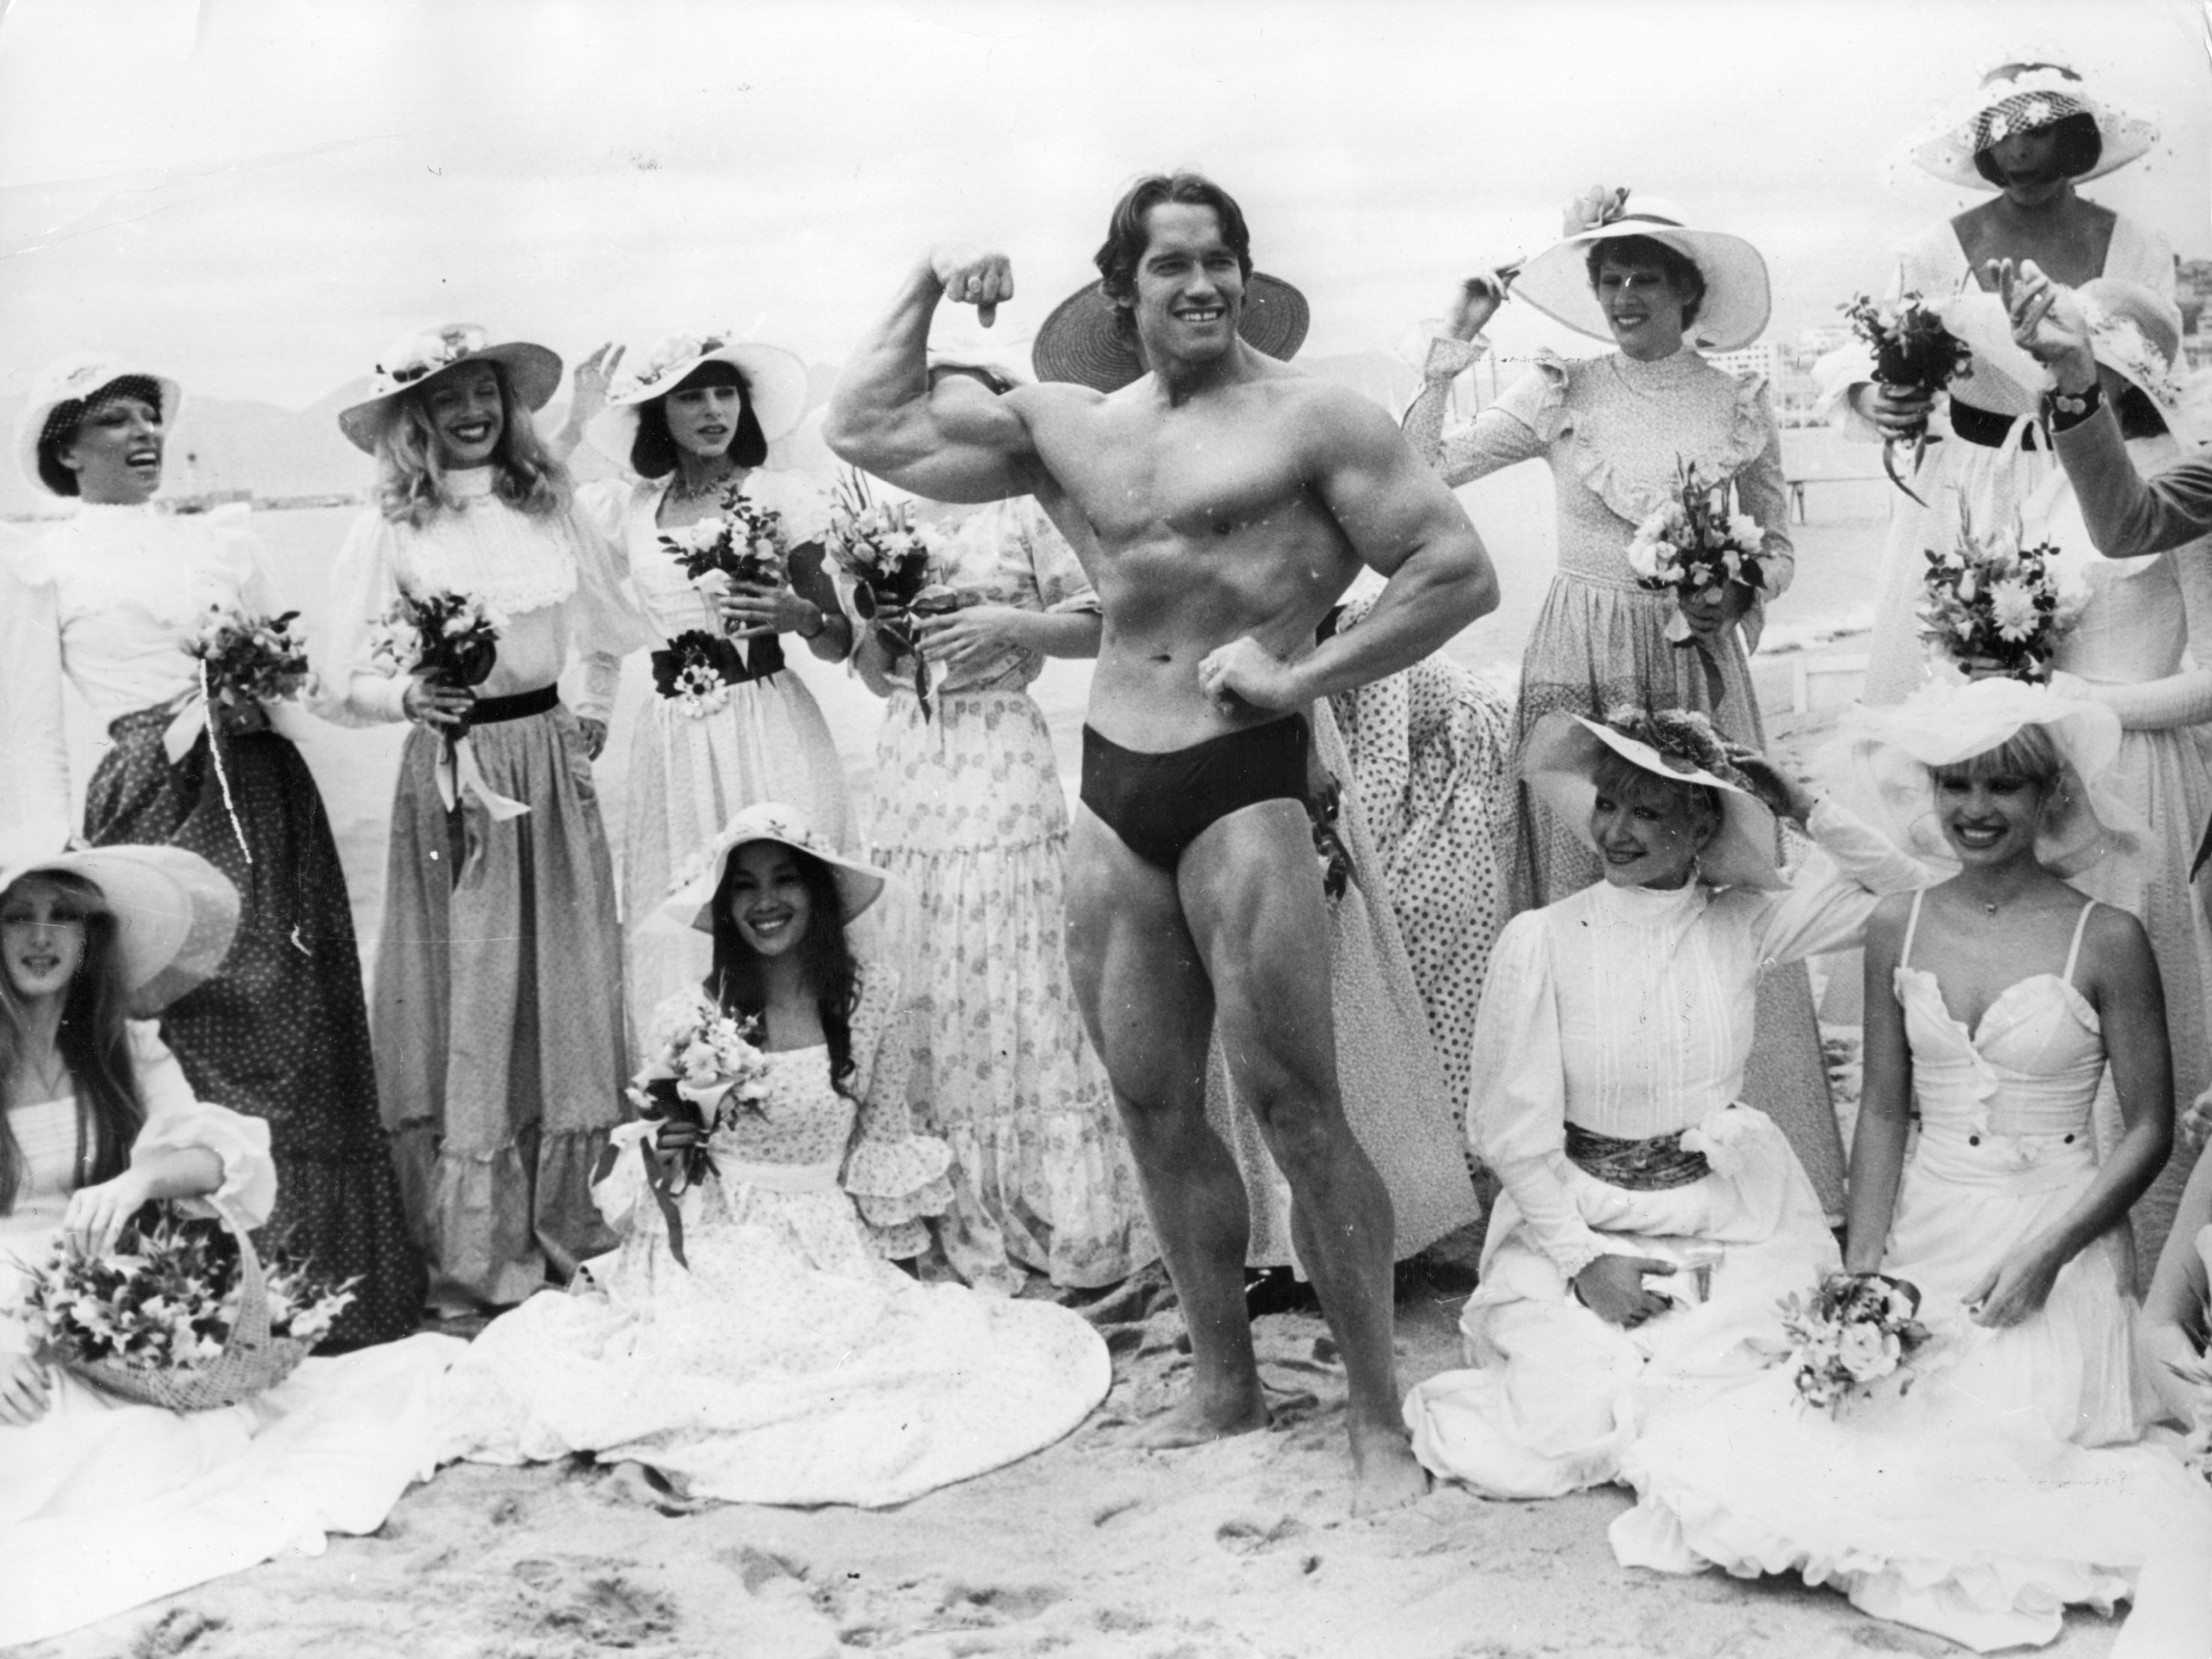 Arnold Schwarzenegger, en el festival de cine de Cannes. Ya era conocido como Mr. Universo (Photo by Keystone/Getty Images)